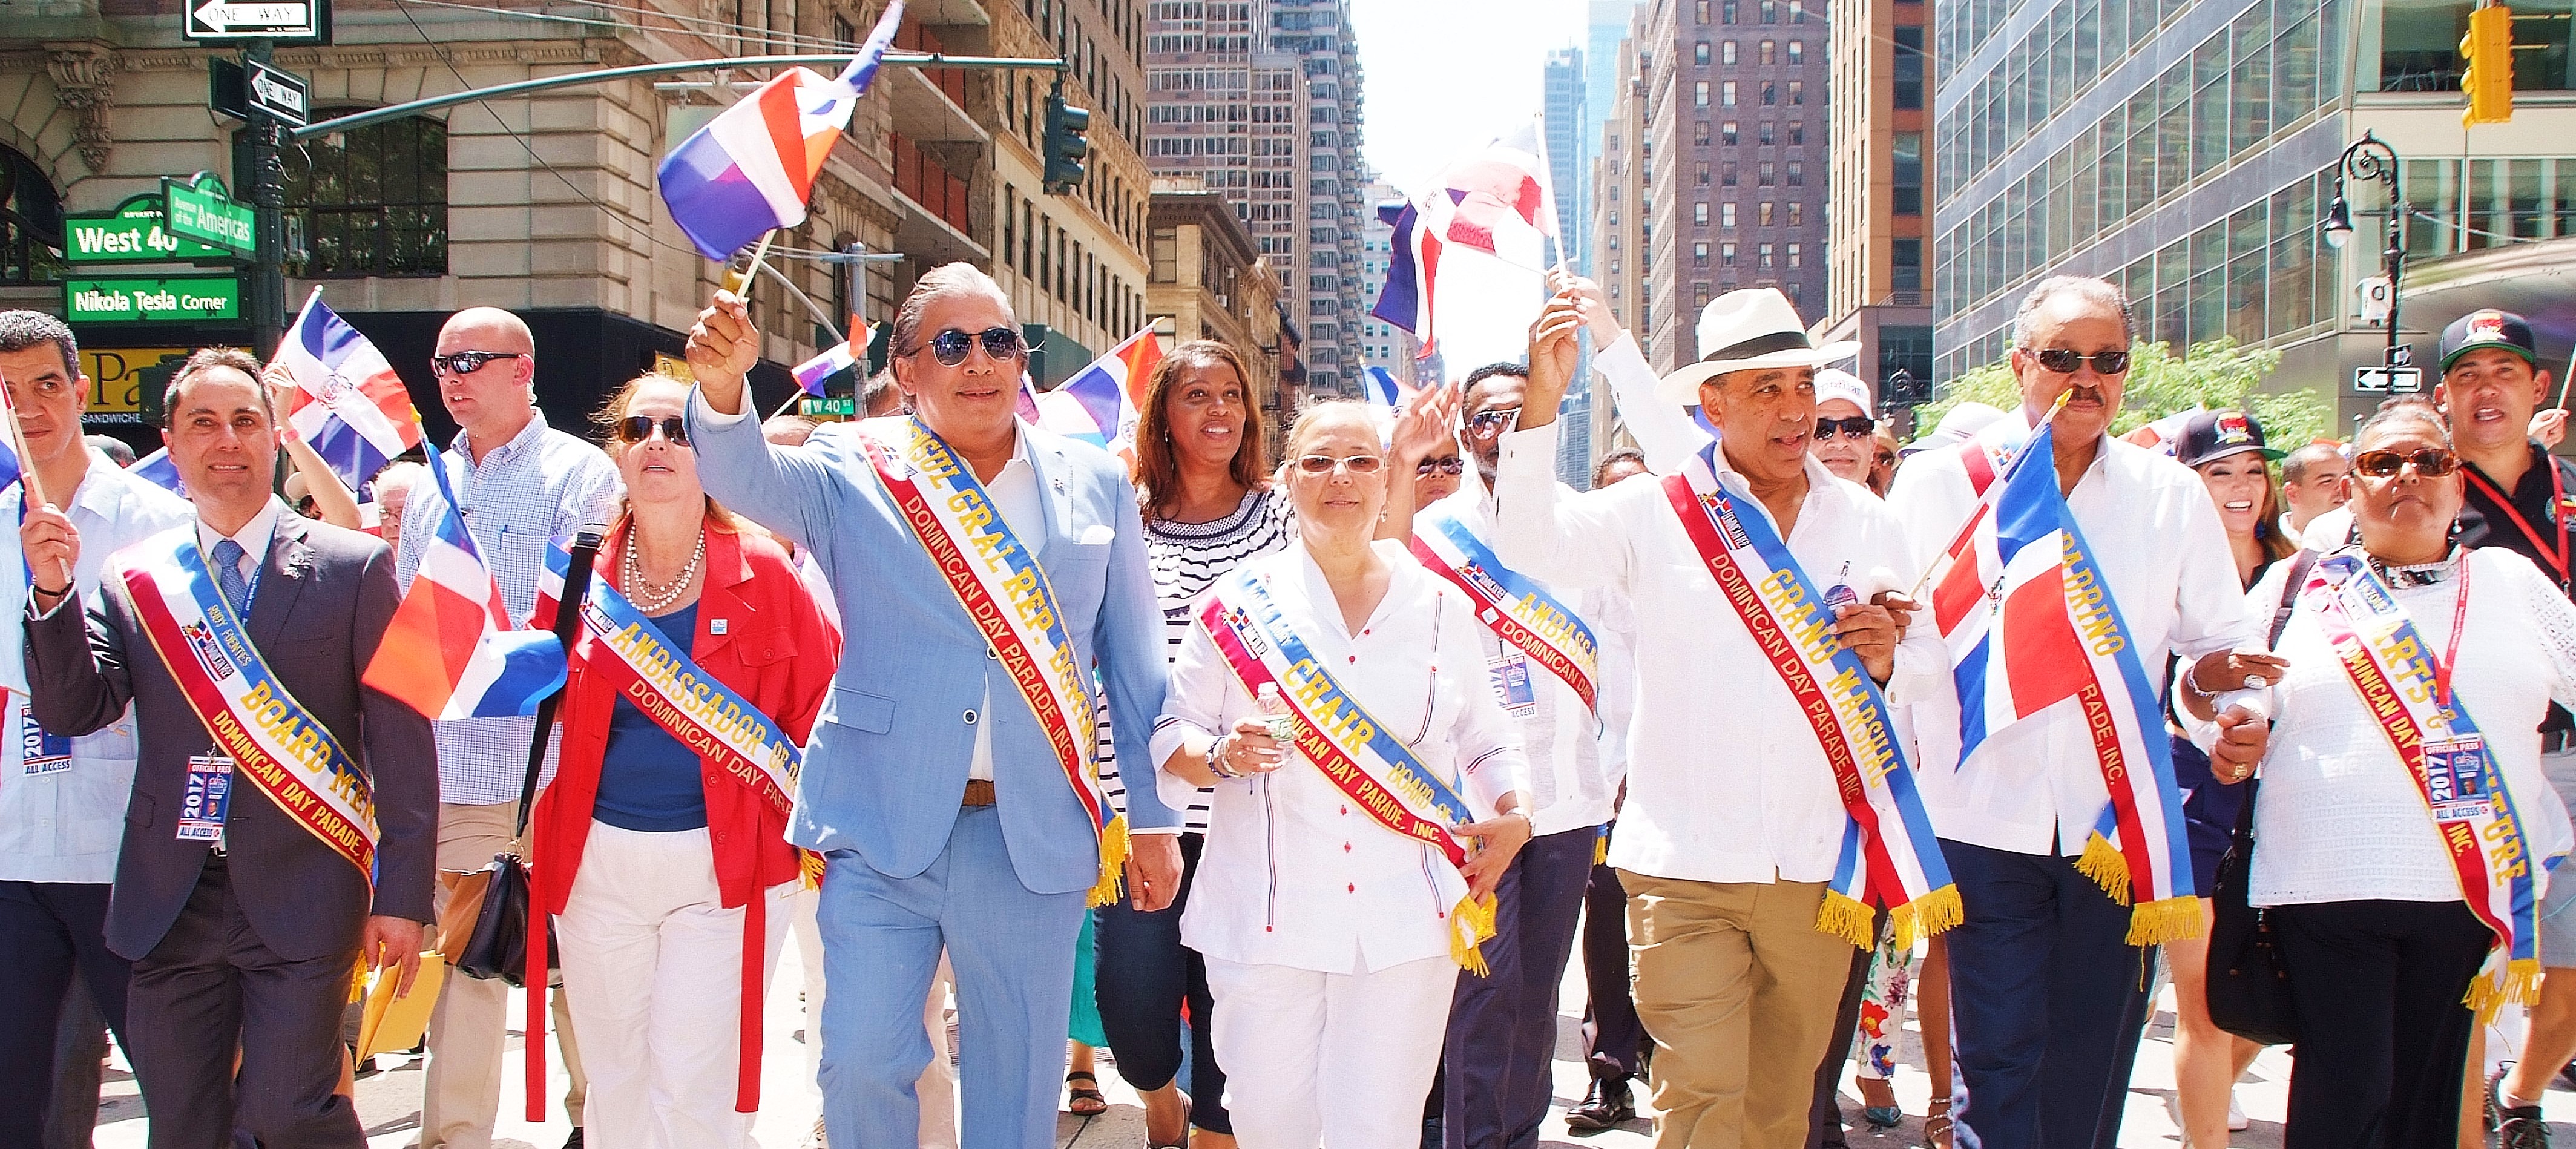  Cónsul Castillo resalta el fervor patriótico de sus connacionales al mostrar sus tradiciones y valores culturales en Desfile Dominicano en NY